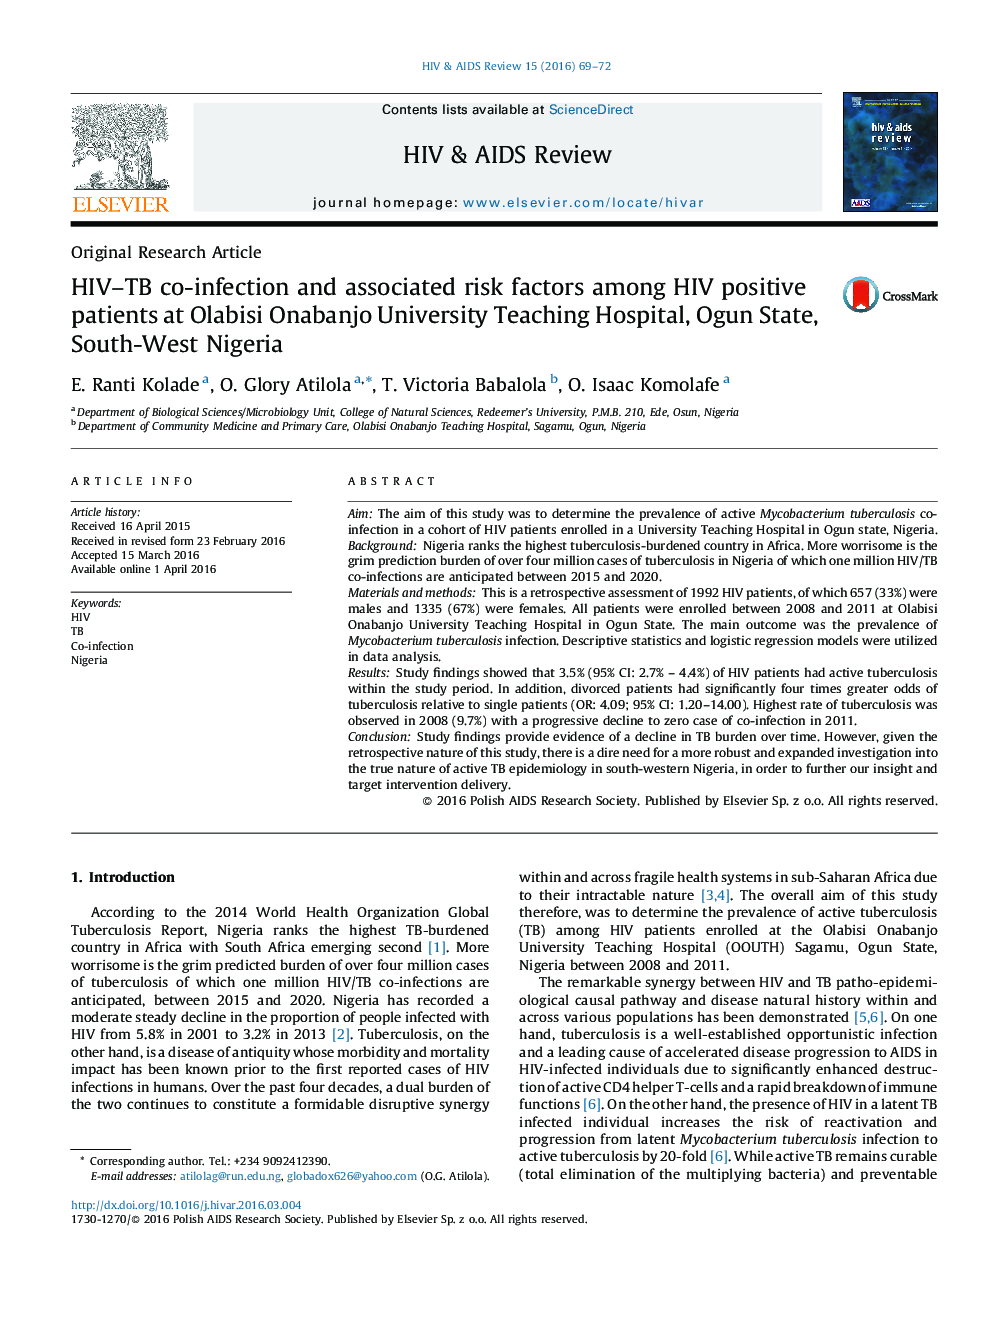 عوامل خطر مرتبط با عفونت توام HIV-TB  در میان افراد مبتلا به HIV مثبت در بیمارستان آموزشی دانشگاه اوگون دولت، جنوب غرب نیجریه